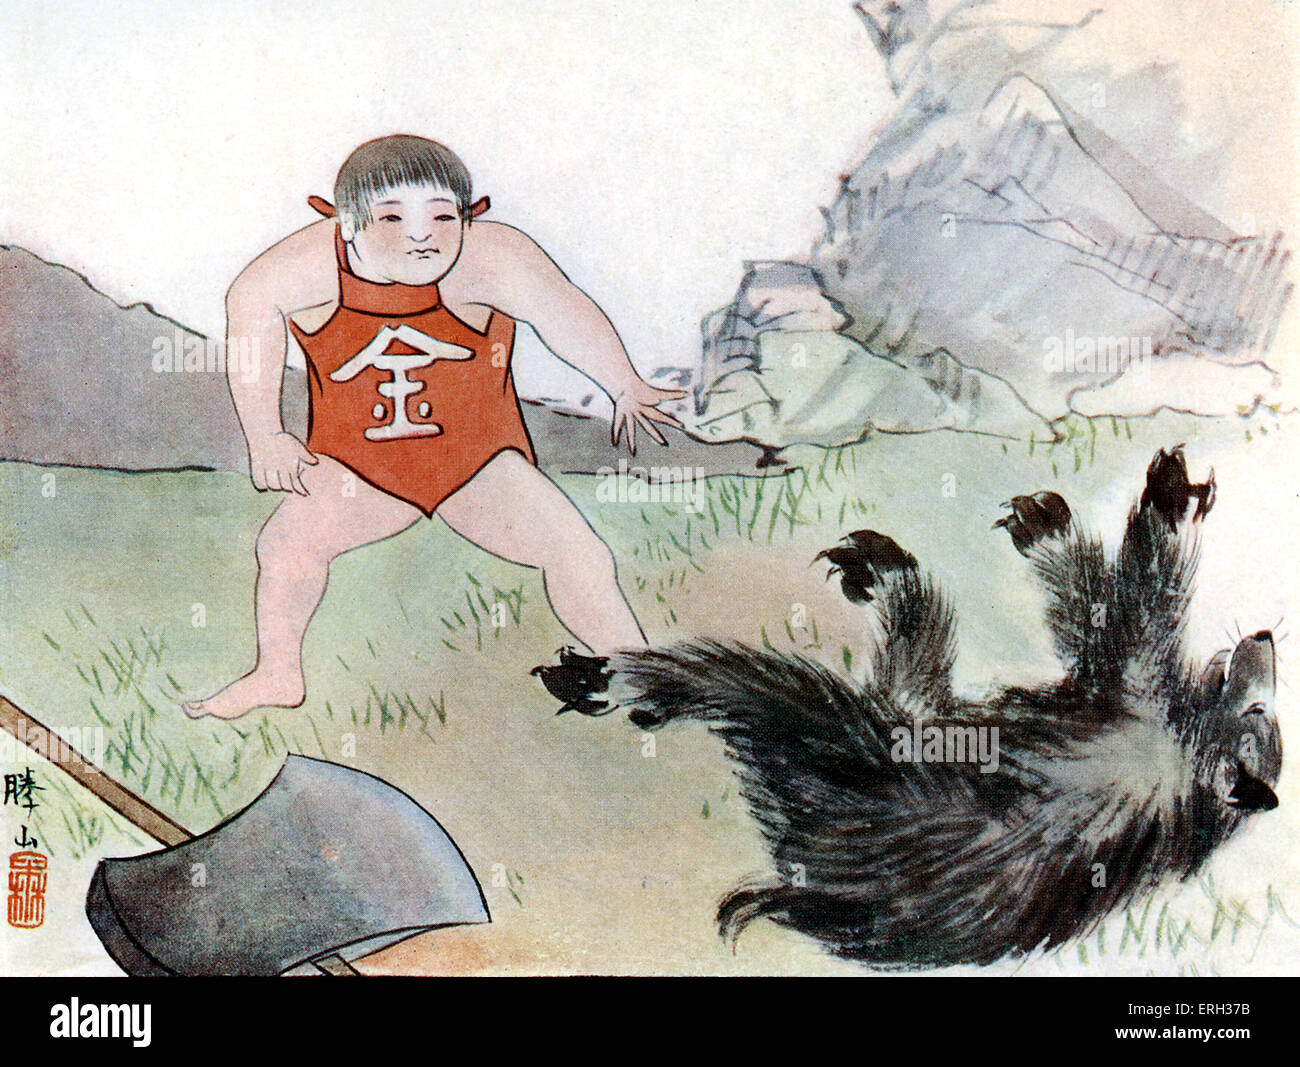 Die Geschichte von Kintaro der starke junge aus Wonder Geschichten des alten Japan durch Alan Leslie Whitehorn, (japanische Volkssage).  Veröffentlicht Stockfoto